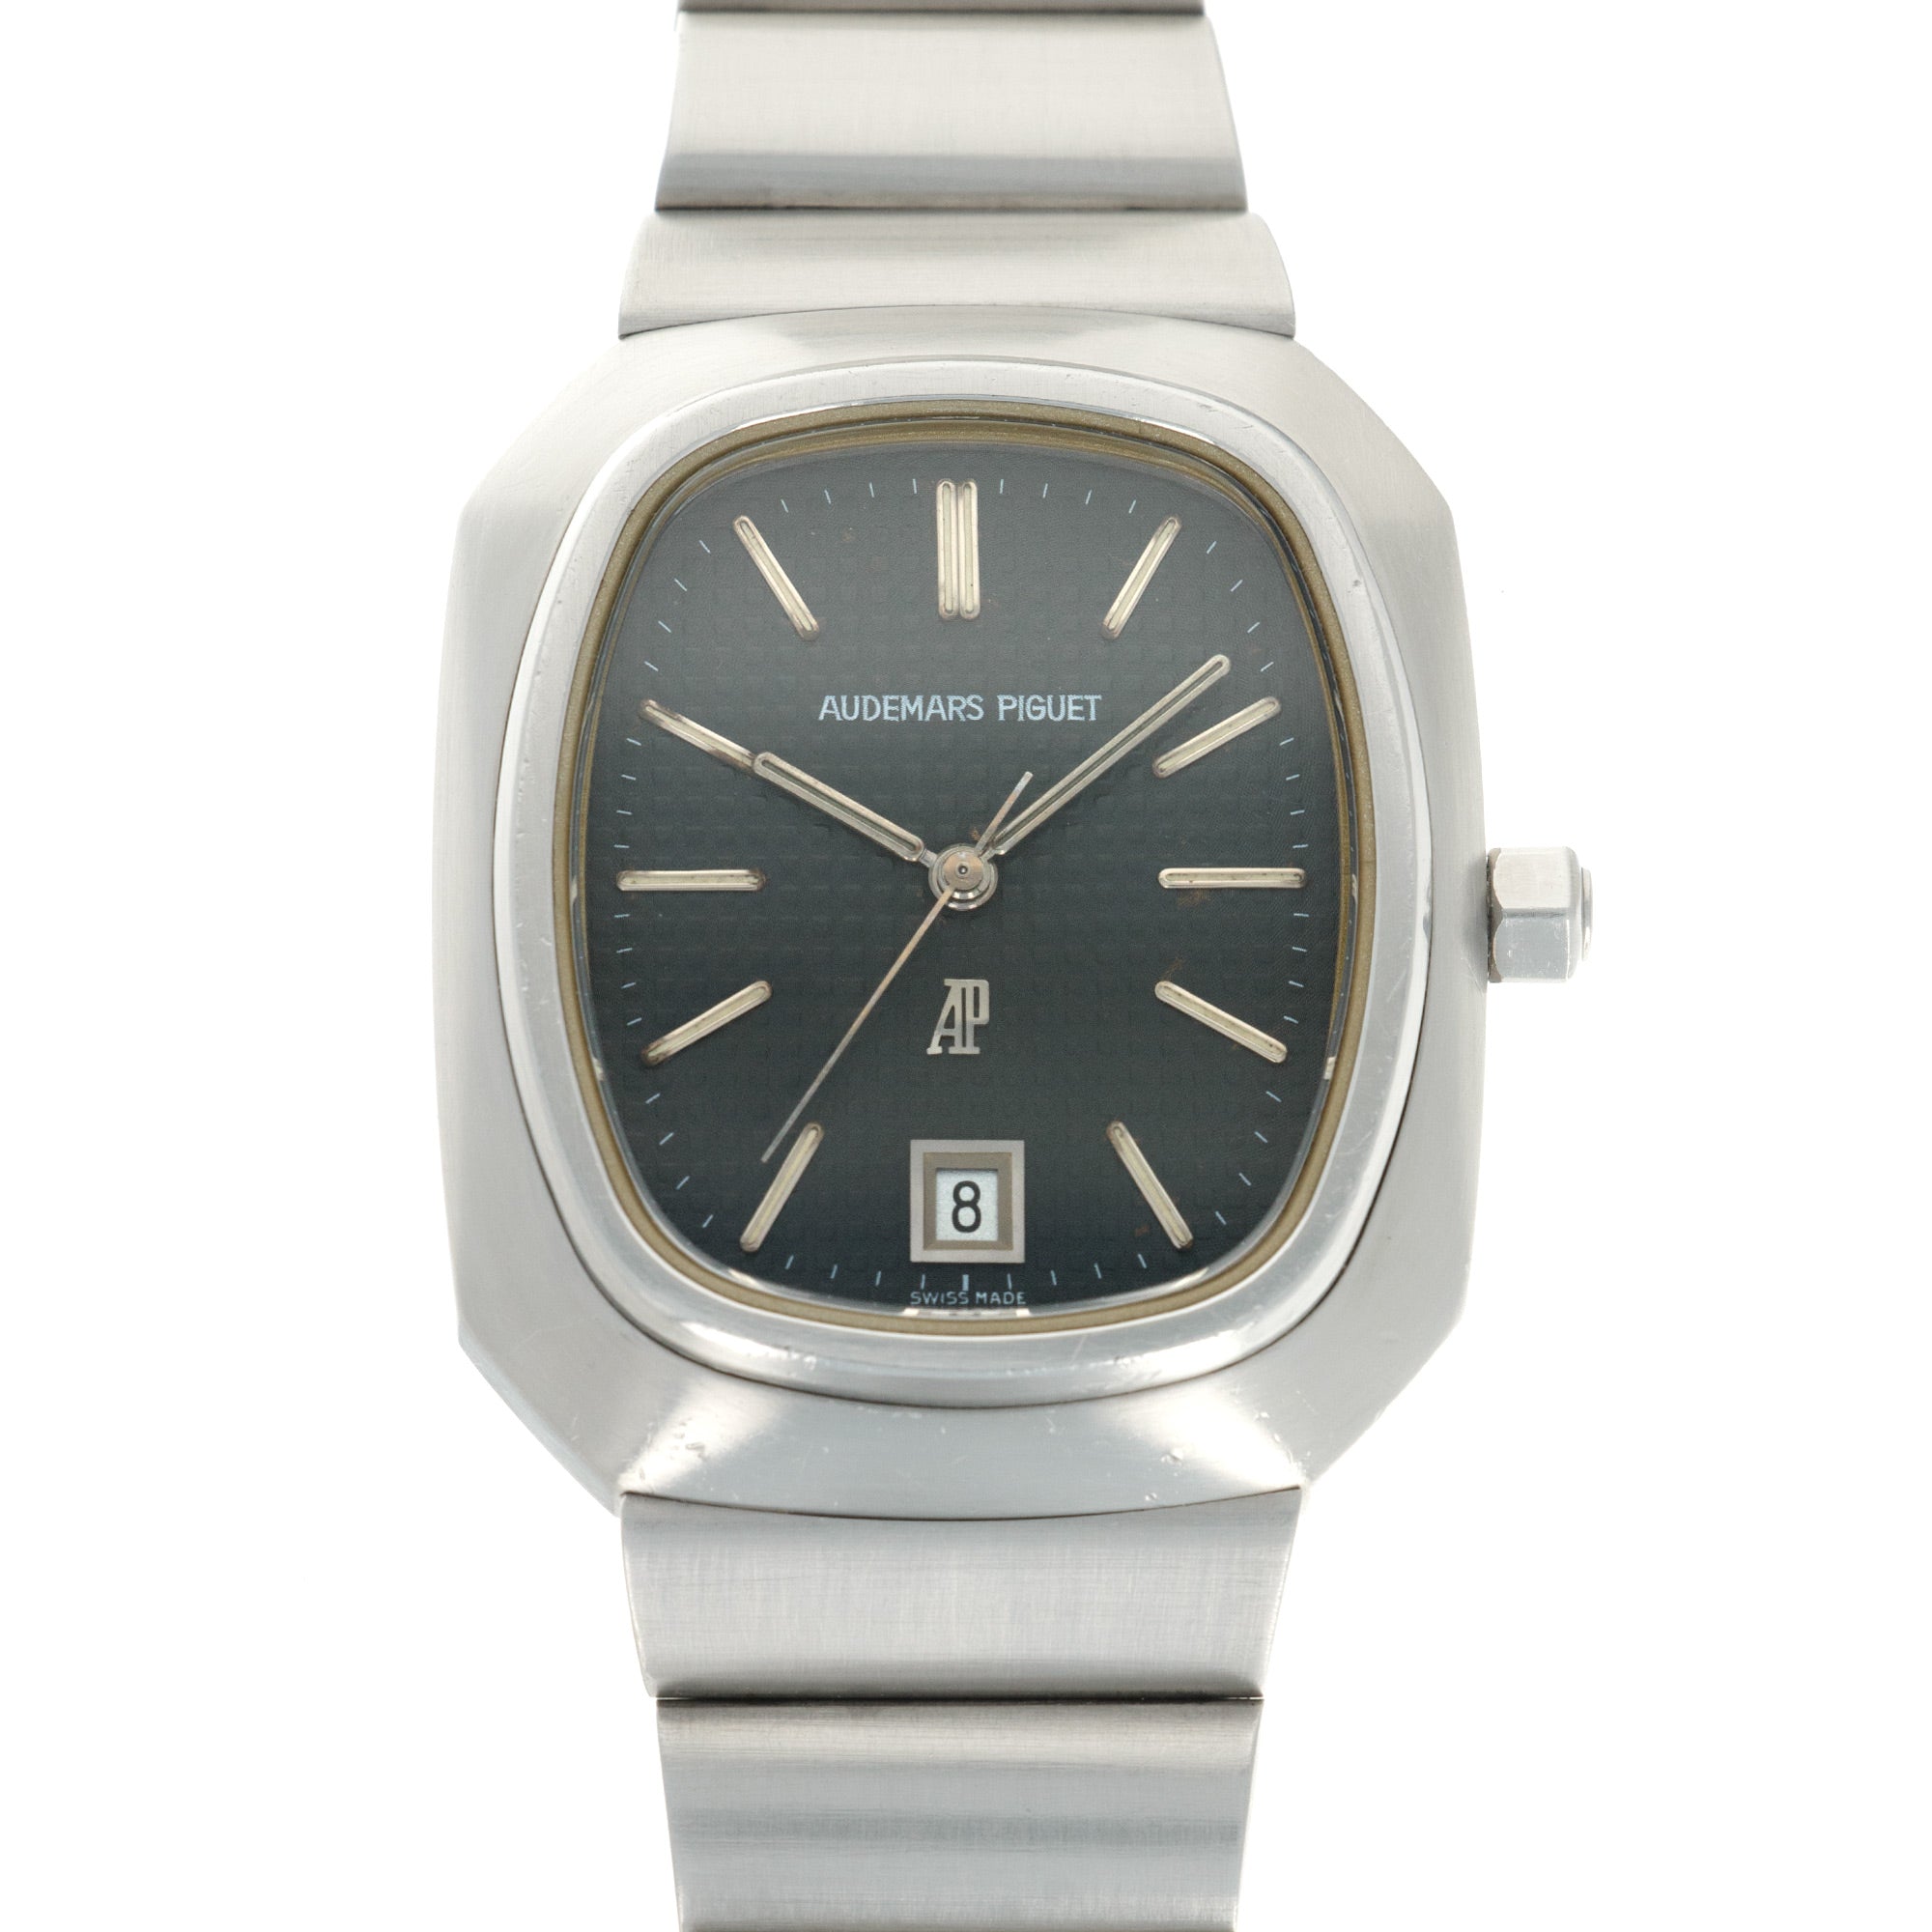 Audemars Piguet - Audemars Piguet Royal Oak Beta 21 Watch Ref. 6001, 1970s - The Keystone Watches